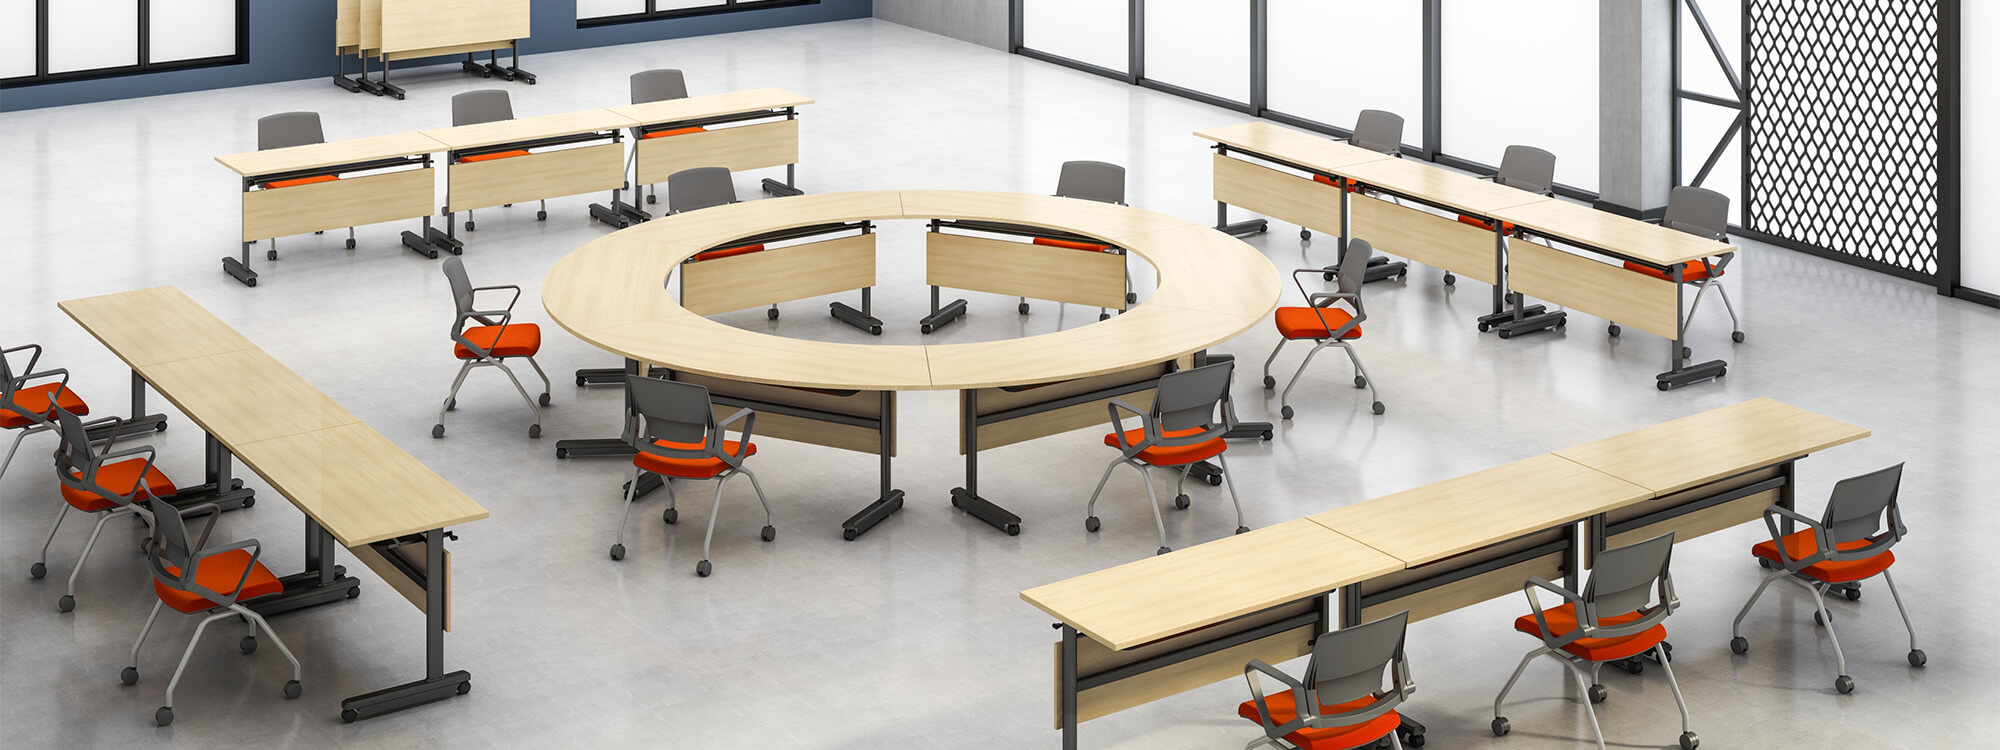 يمكن أن تتكون من طاولات تدريب خشبية مستديرة ومستطيلة ومكاتب متحركة